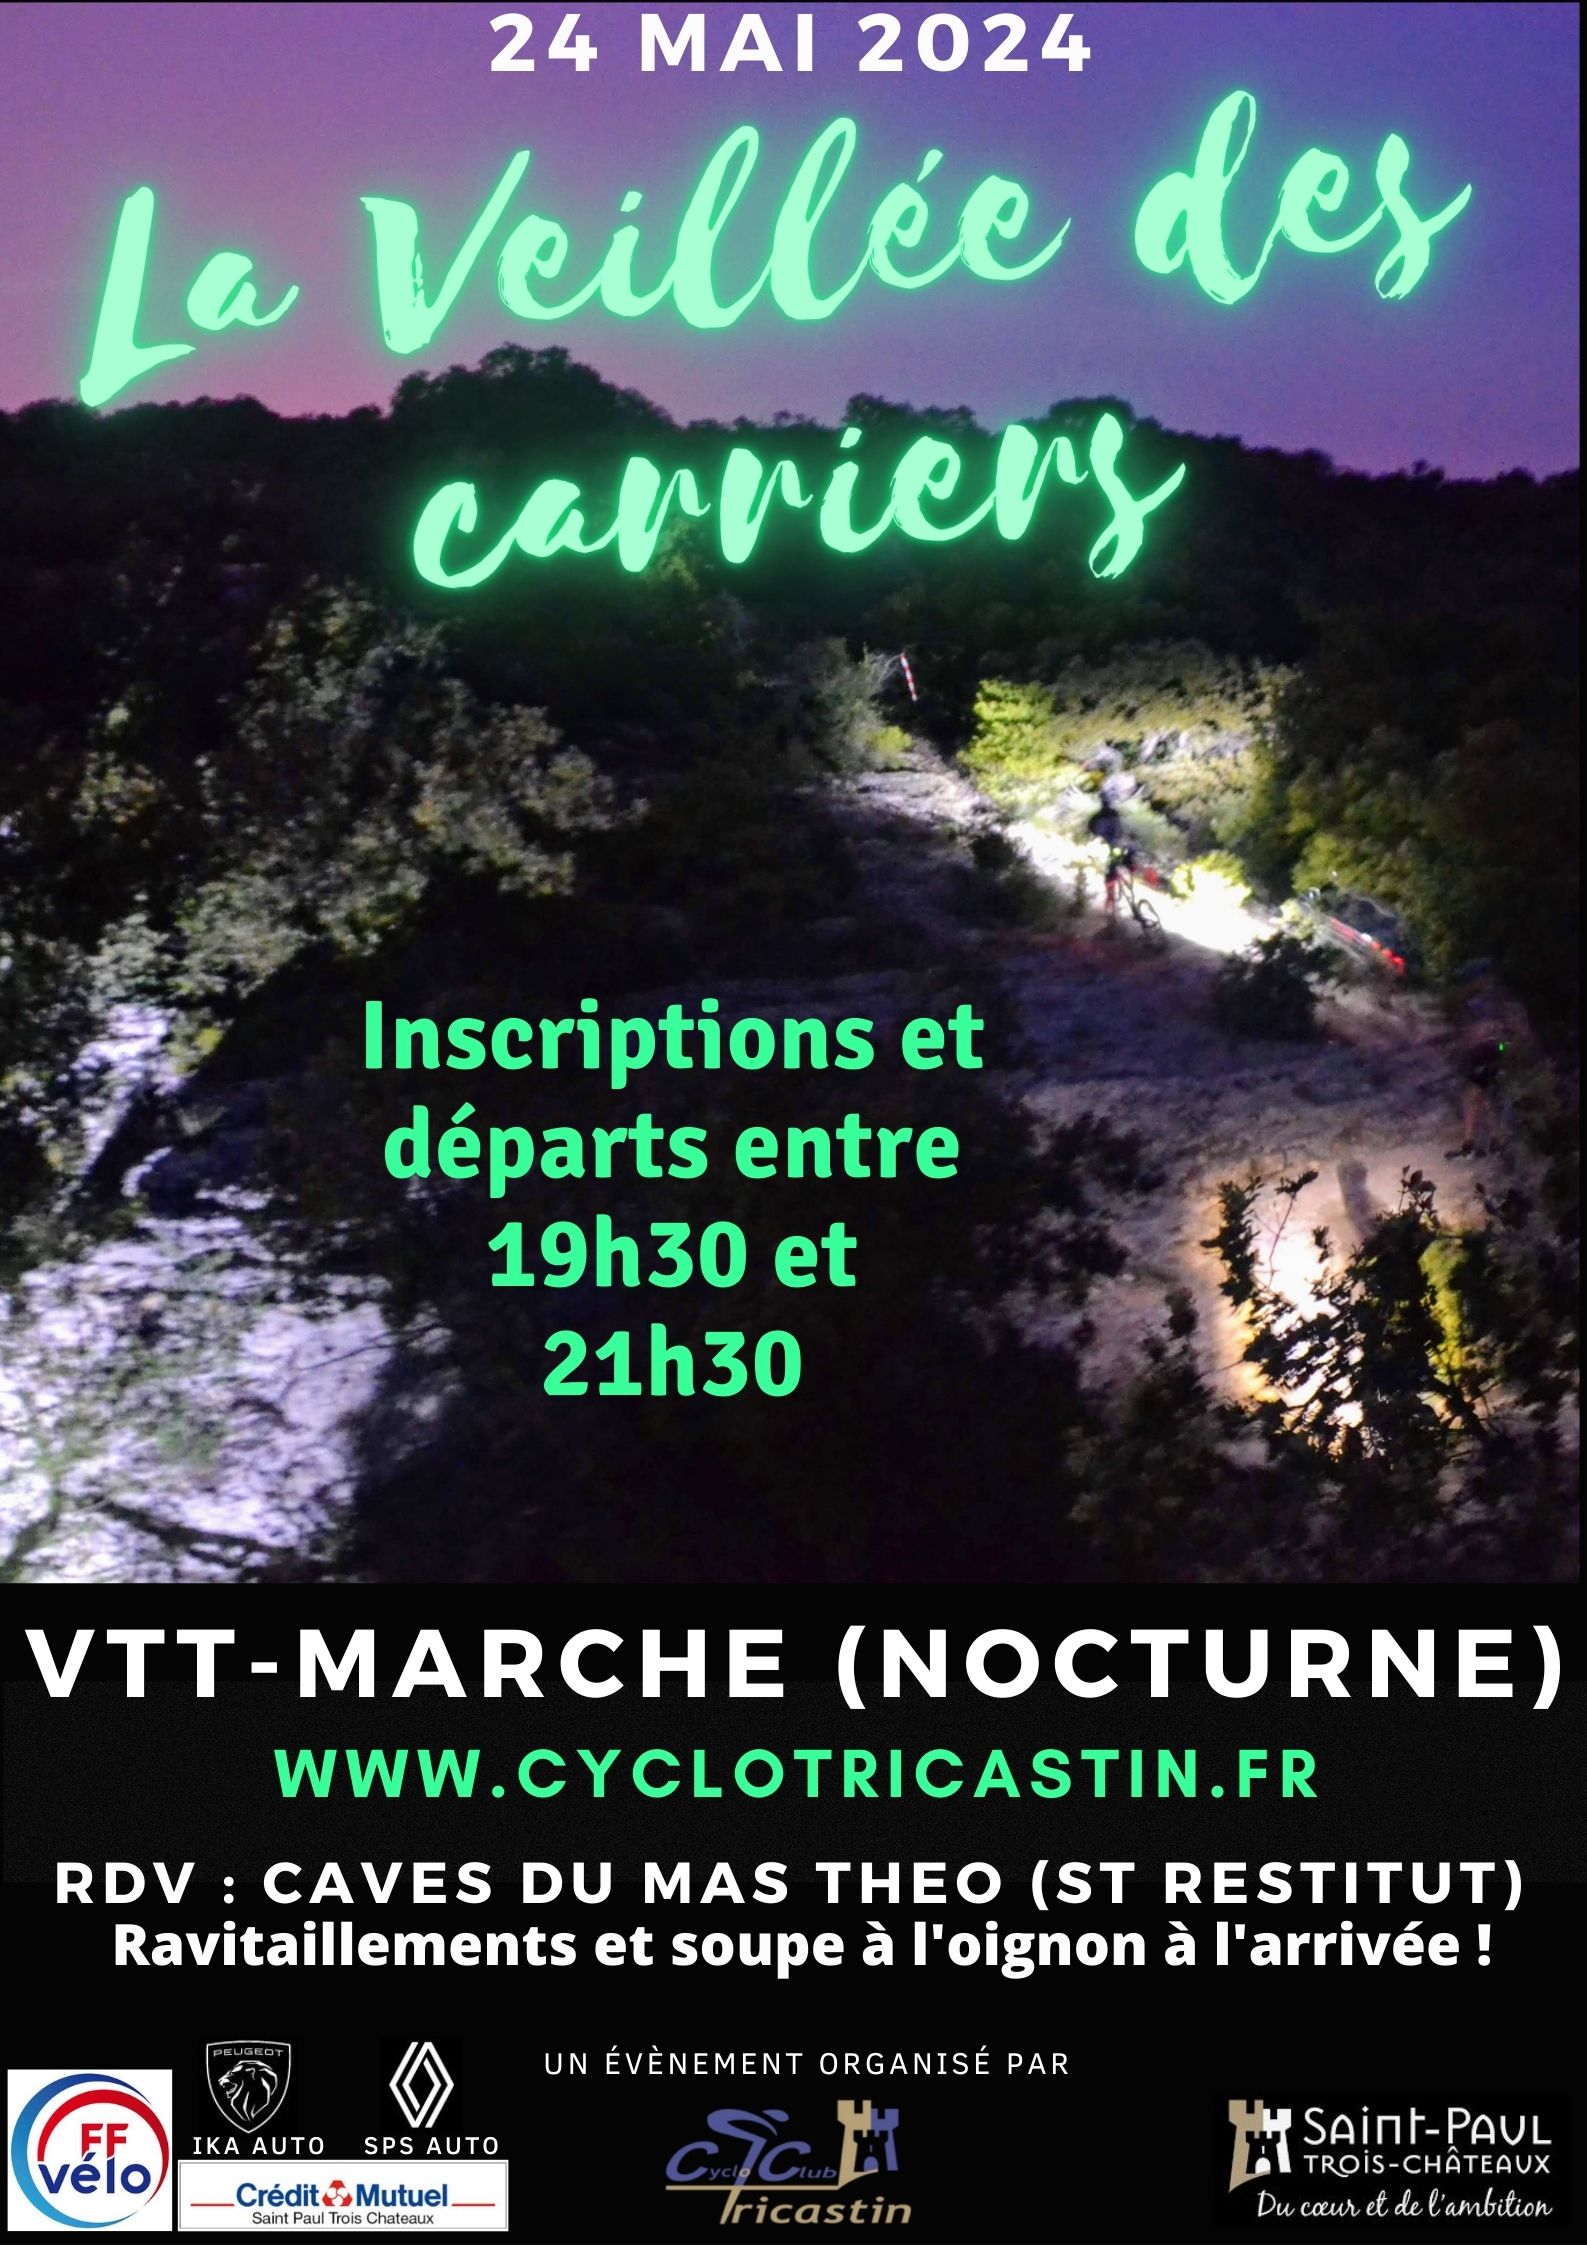 Affiche de La 10ème veillée des carriers (nocturne) à Saint-Restitut